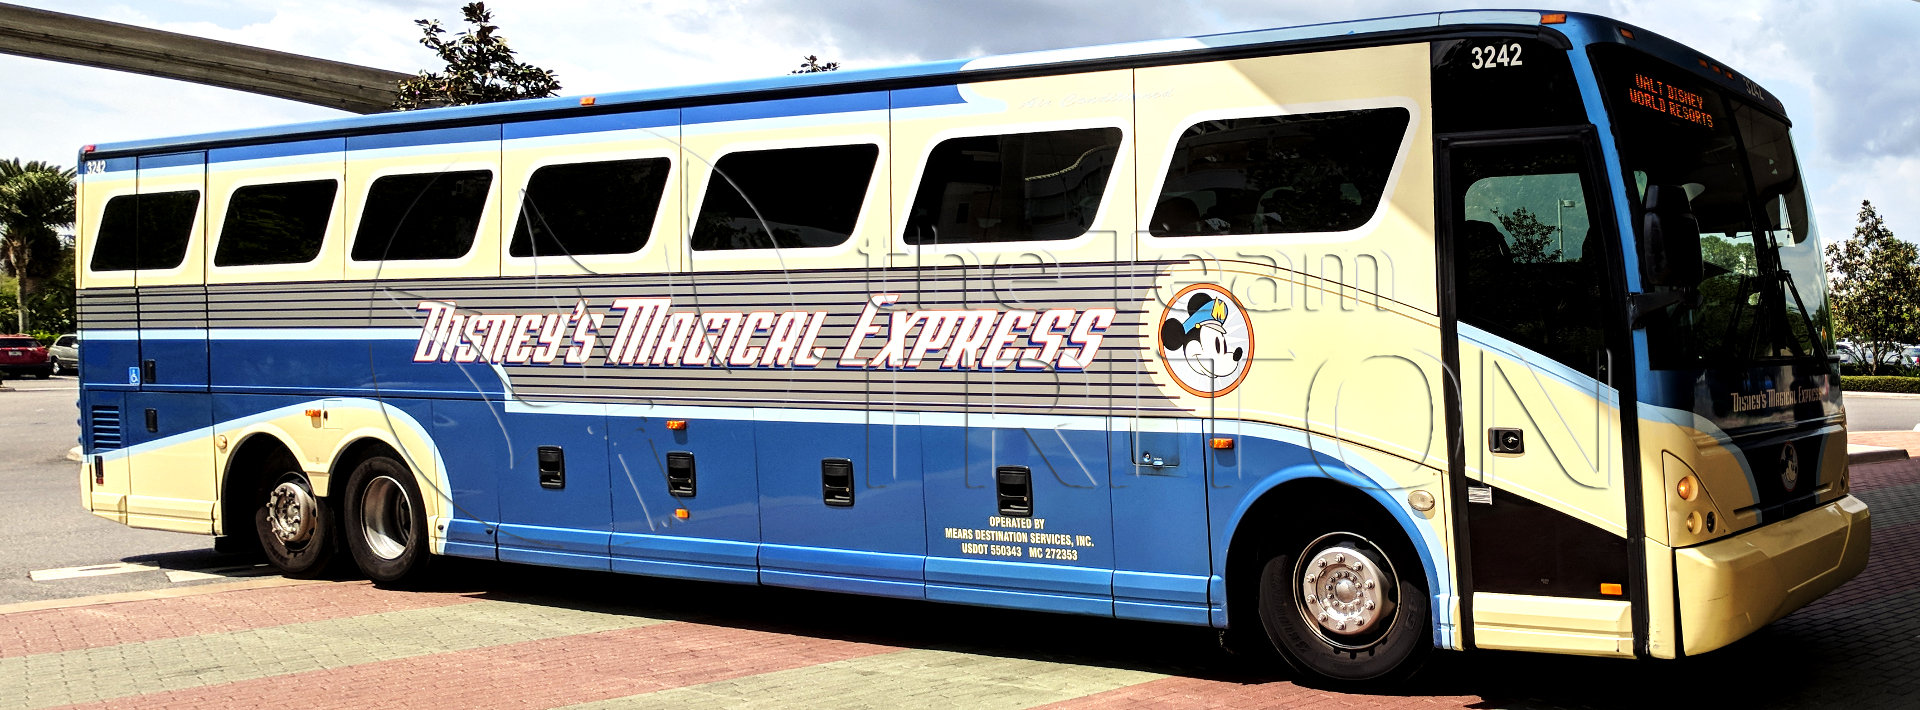 Disney S Magical Express ディズニー マジカル エクスプレス を利用して移動もラクラク The Team Triton